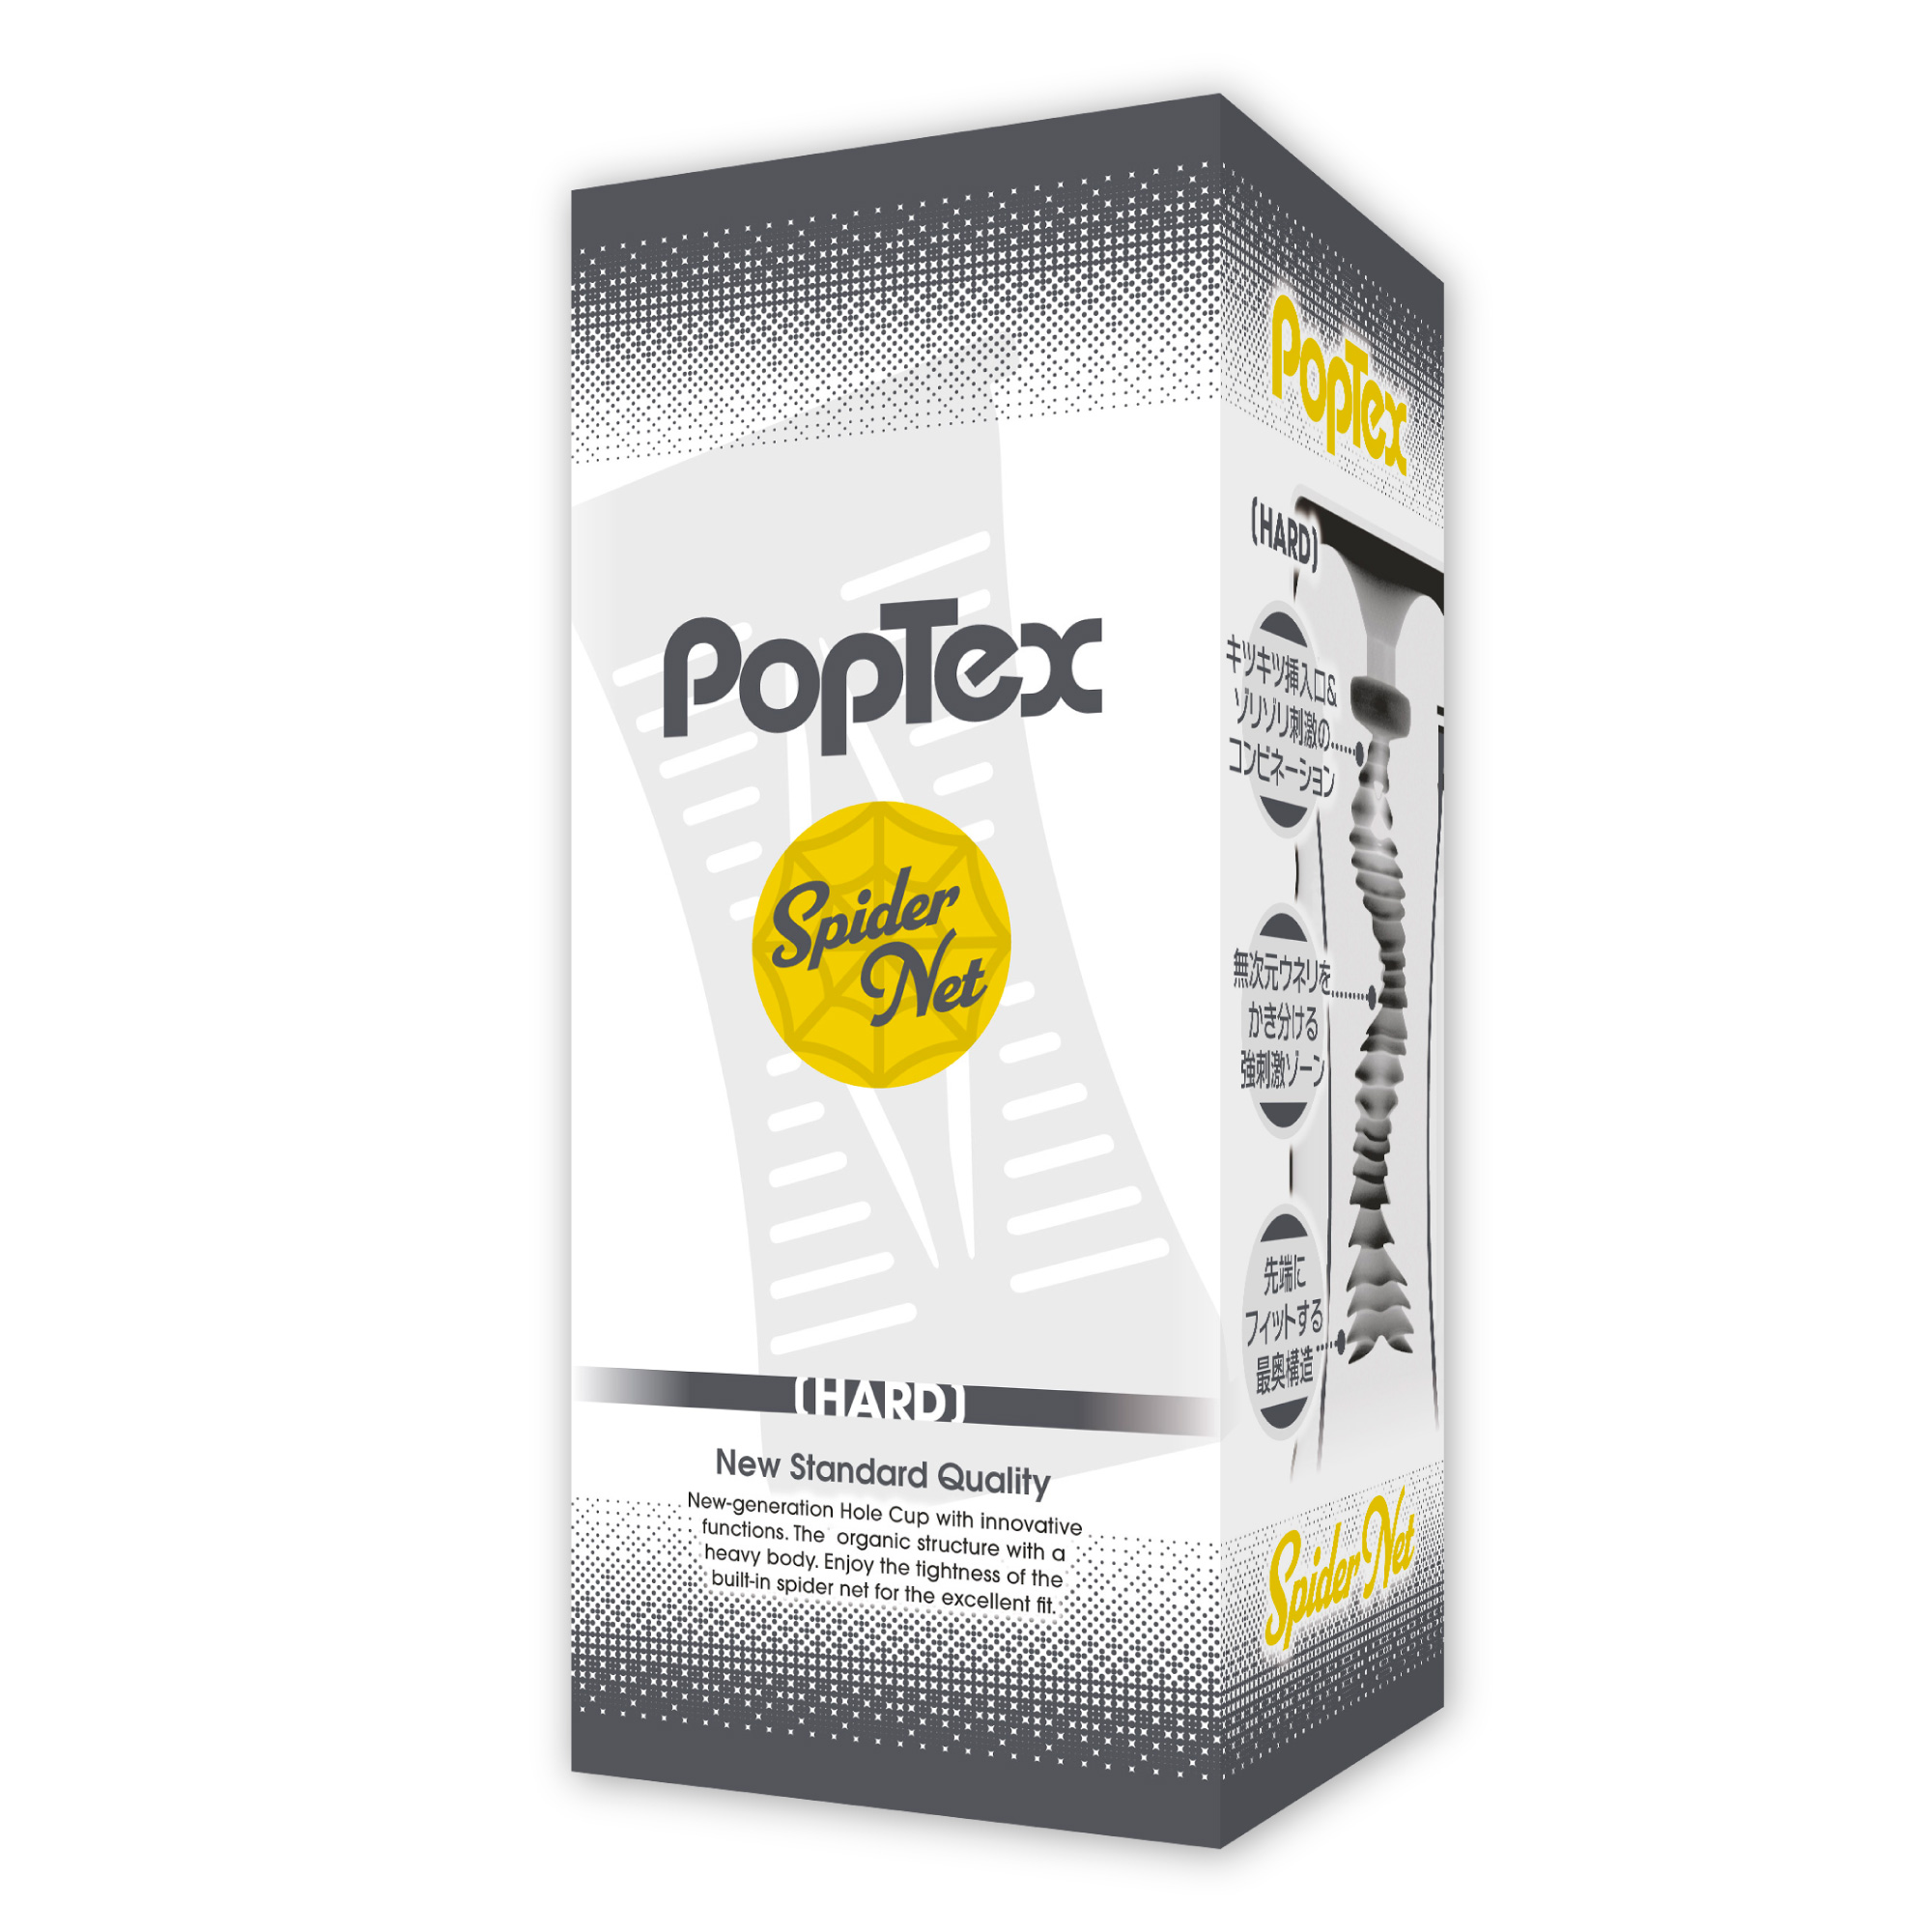 POPTEX spider net HARD BLACK | YELOLAB